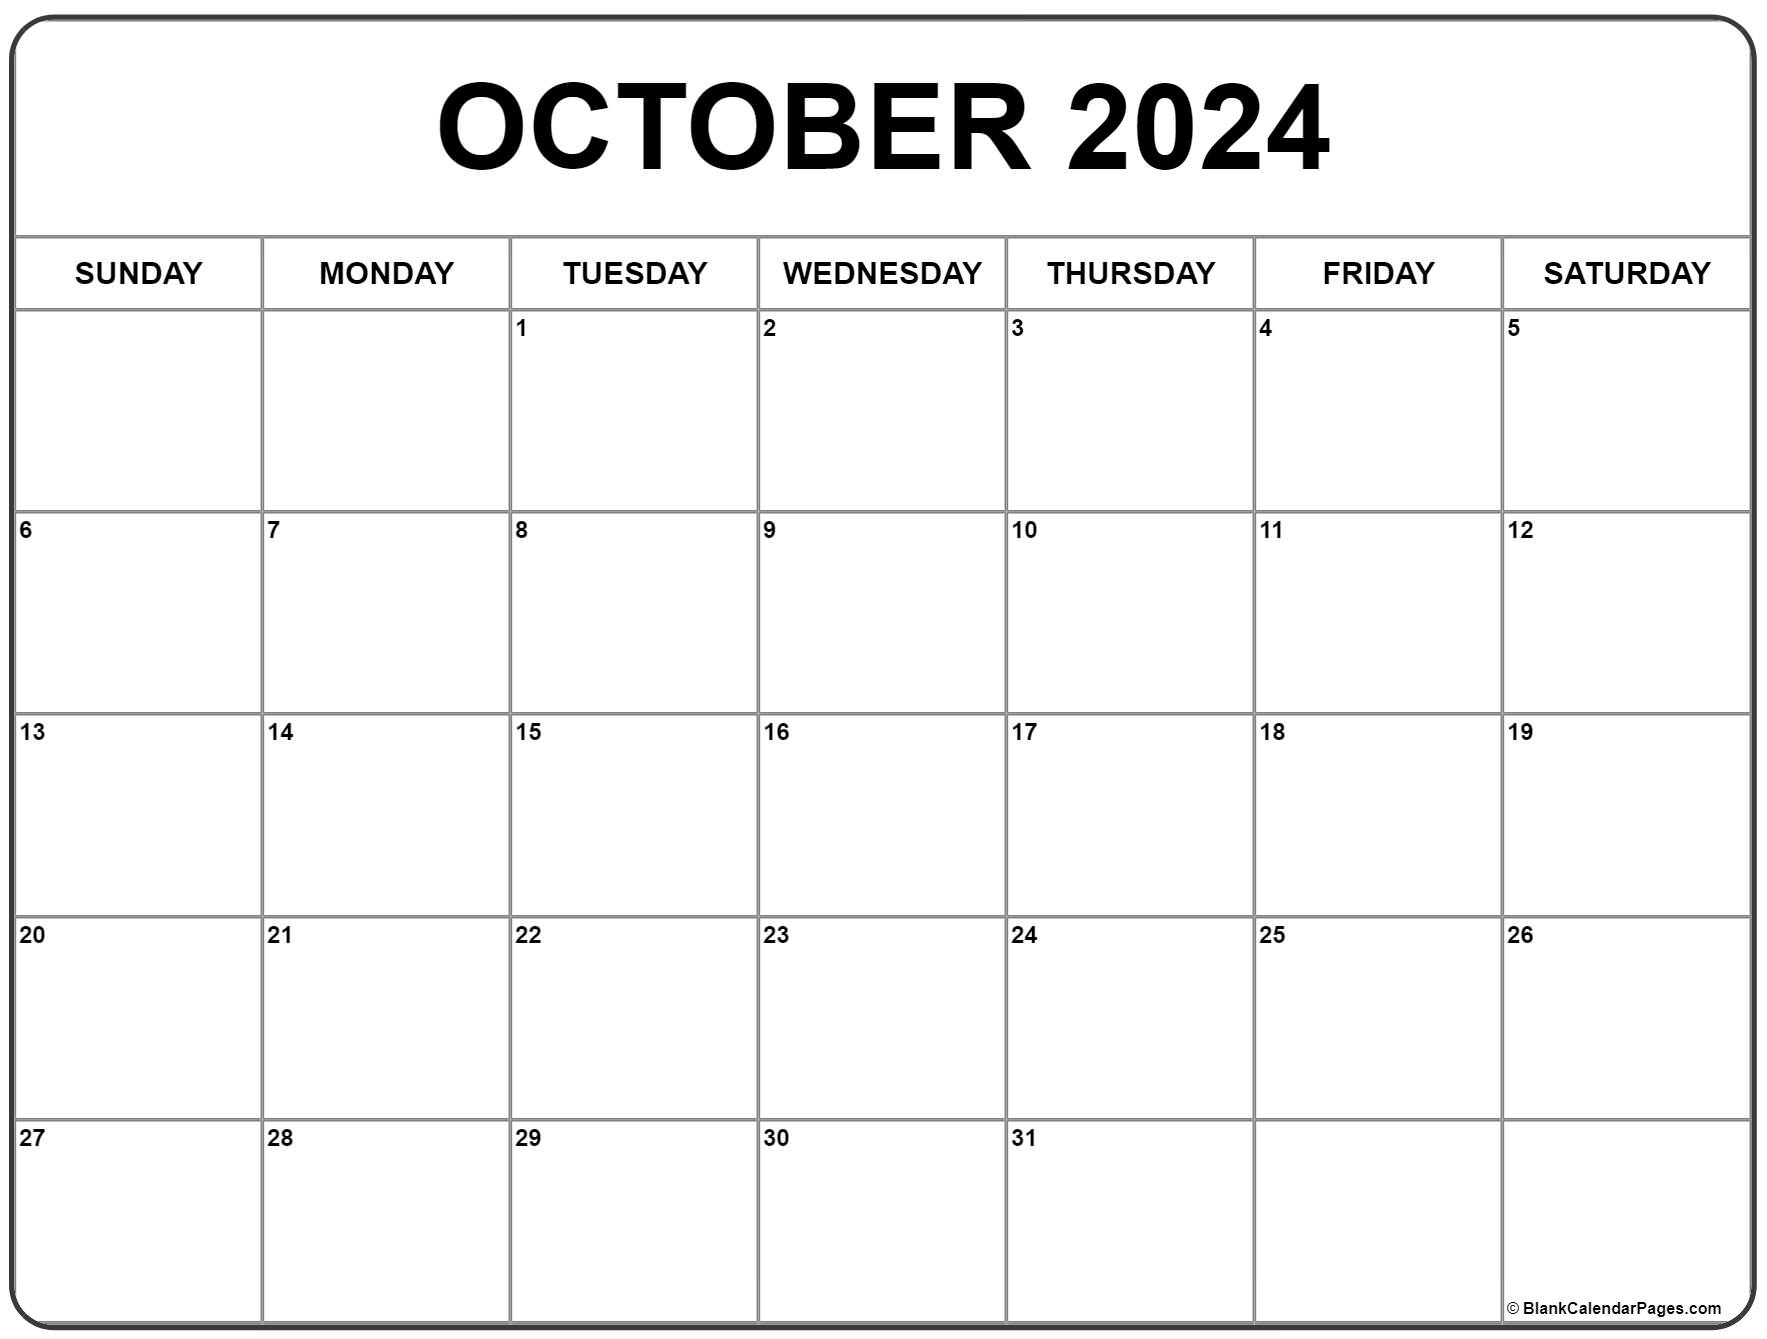 October 2024 calendar free printable calendar